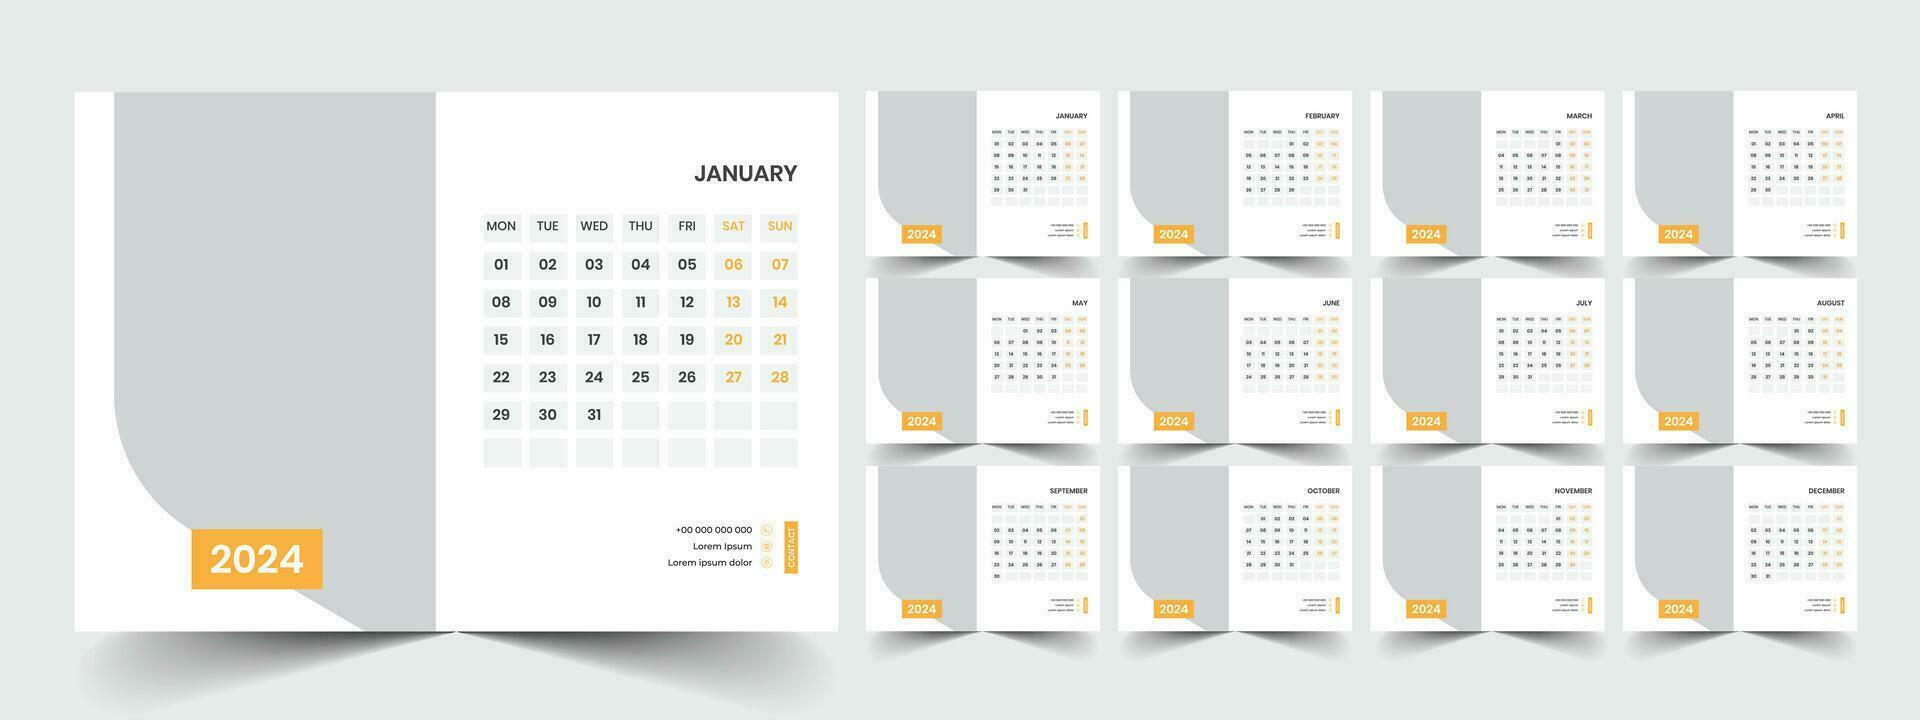 skrivbord kalender 2024 mall design, kontor kalender 2024 vektor